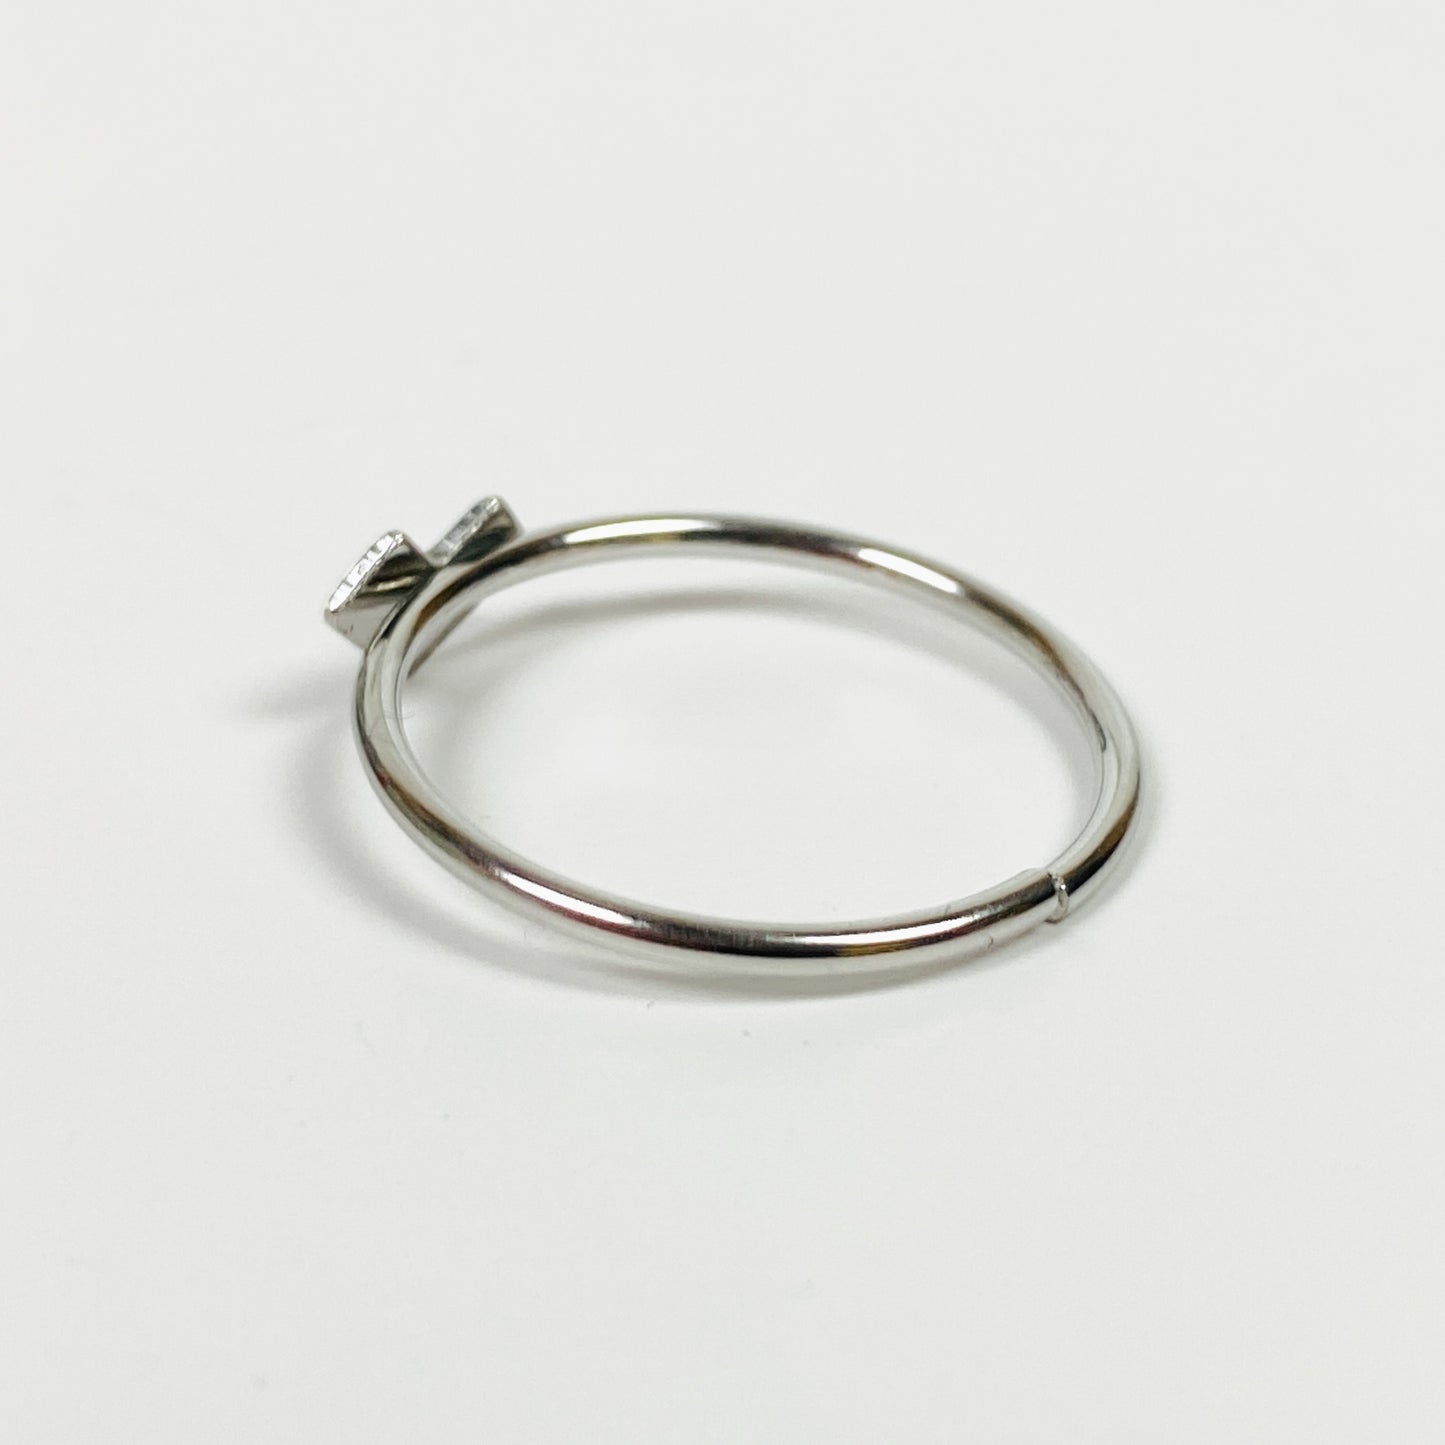 Vintage Retro Adjustable Heart Ring Silver